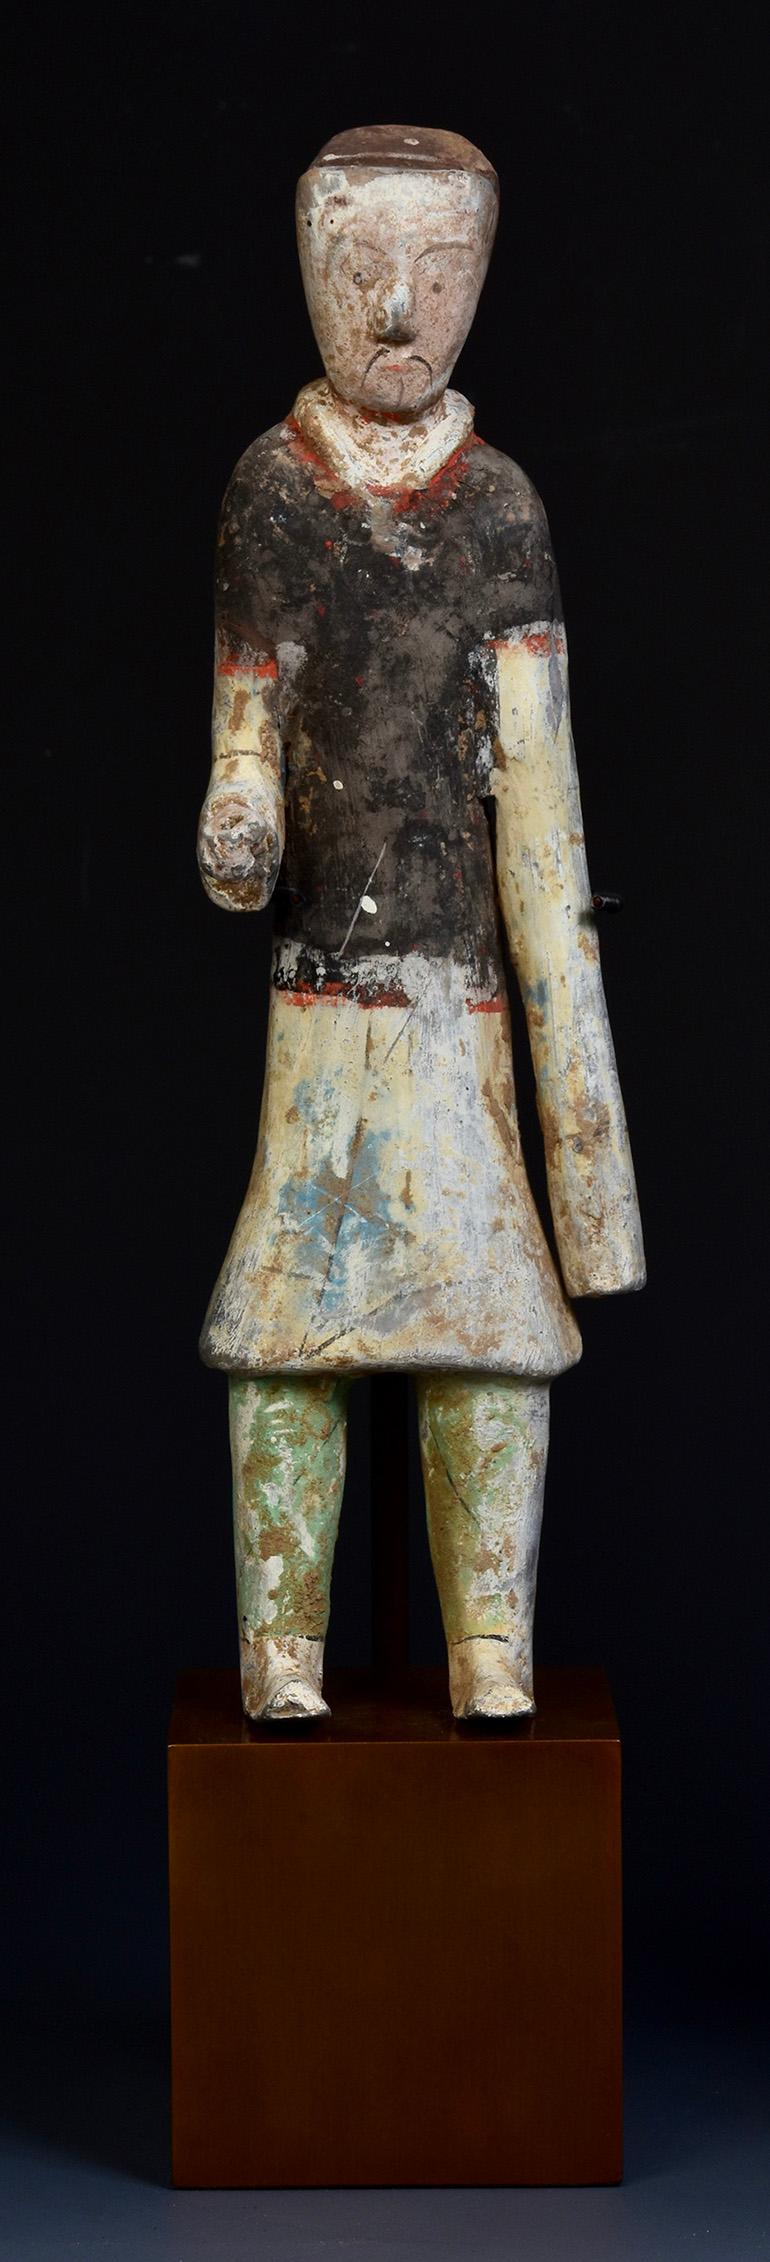 Une paire de figures de groom en poterie peinte chinoise.

Âge : Chine, dynastie Han, 206 avant J.-C. - 220 A.D
Taille : Hauteur 24.8 C.M. / Largeur 7.7 C.M. / Hauteur avec support 32 C.M.
Condition : Etat général de l'ancienne sépulture bien